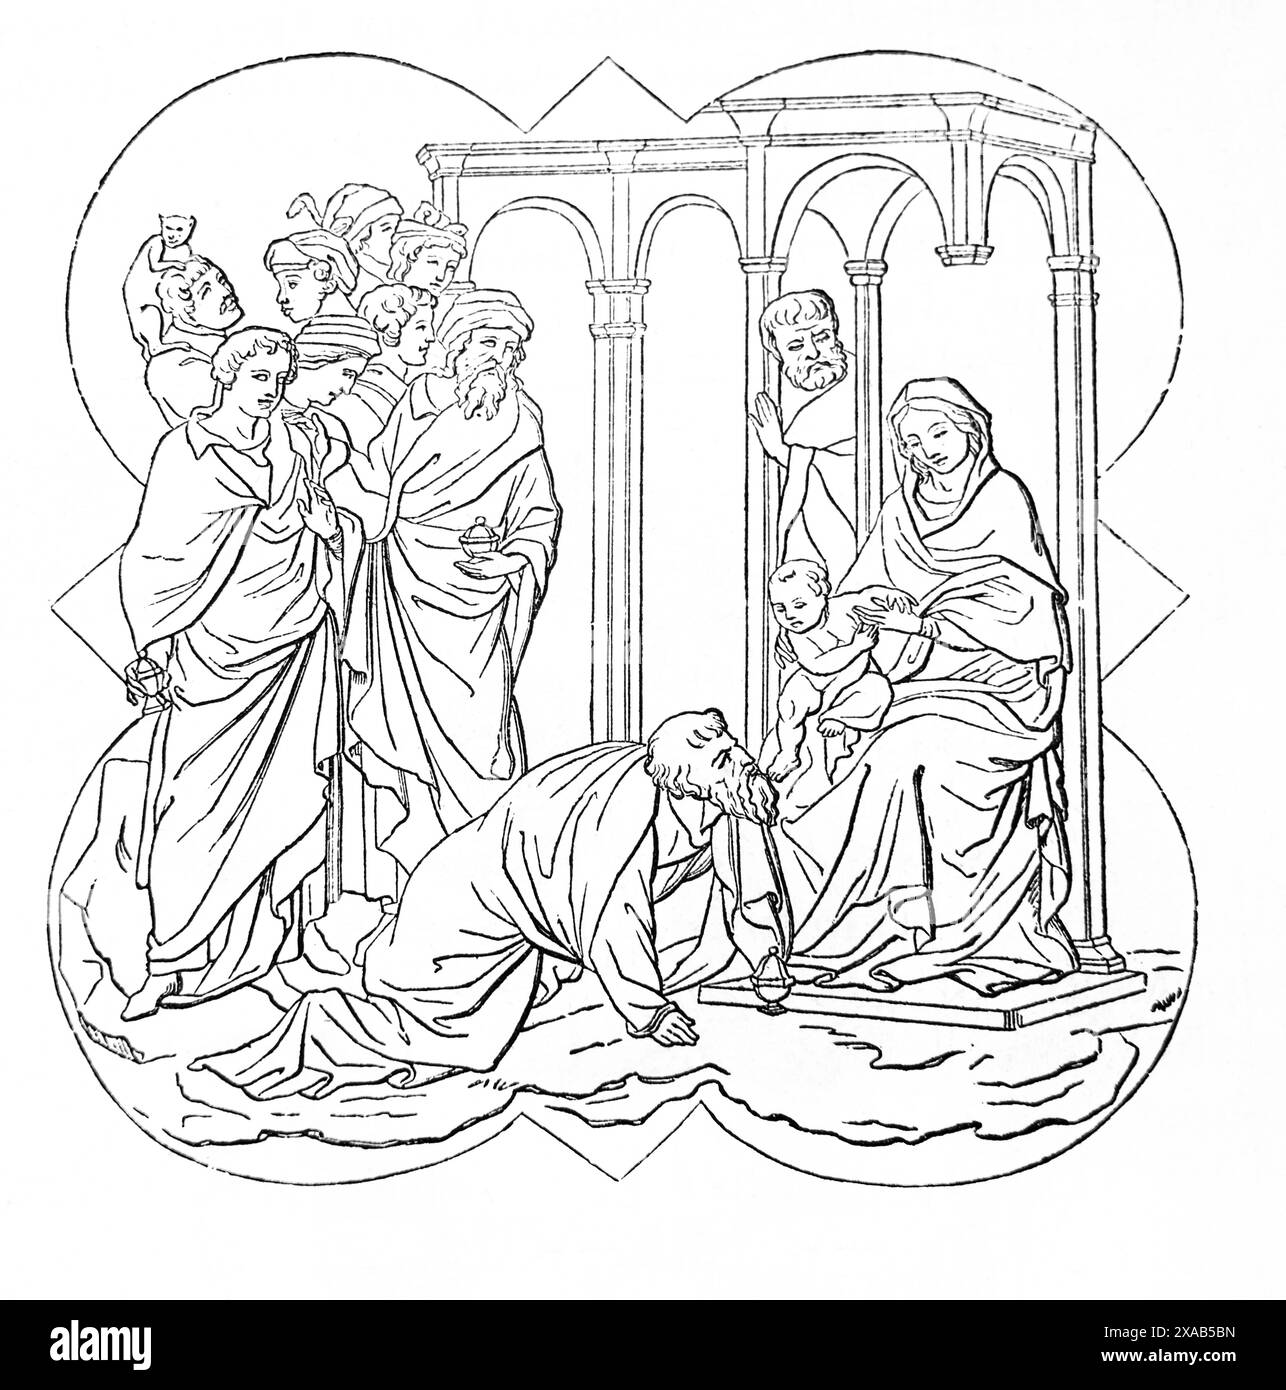 Gravure sur bois de l'Adoration des Sages de la Bible de la famille illustrée antique du XIXe siècle Banque D'Images